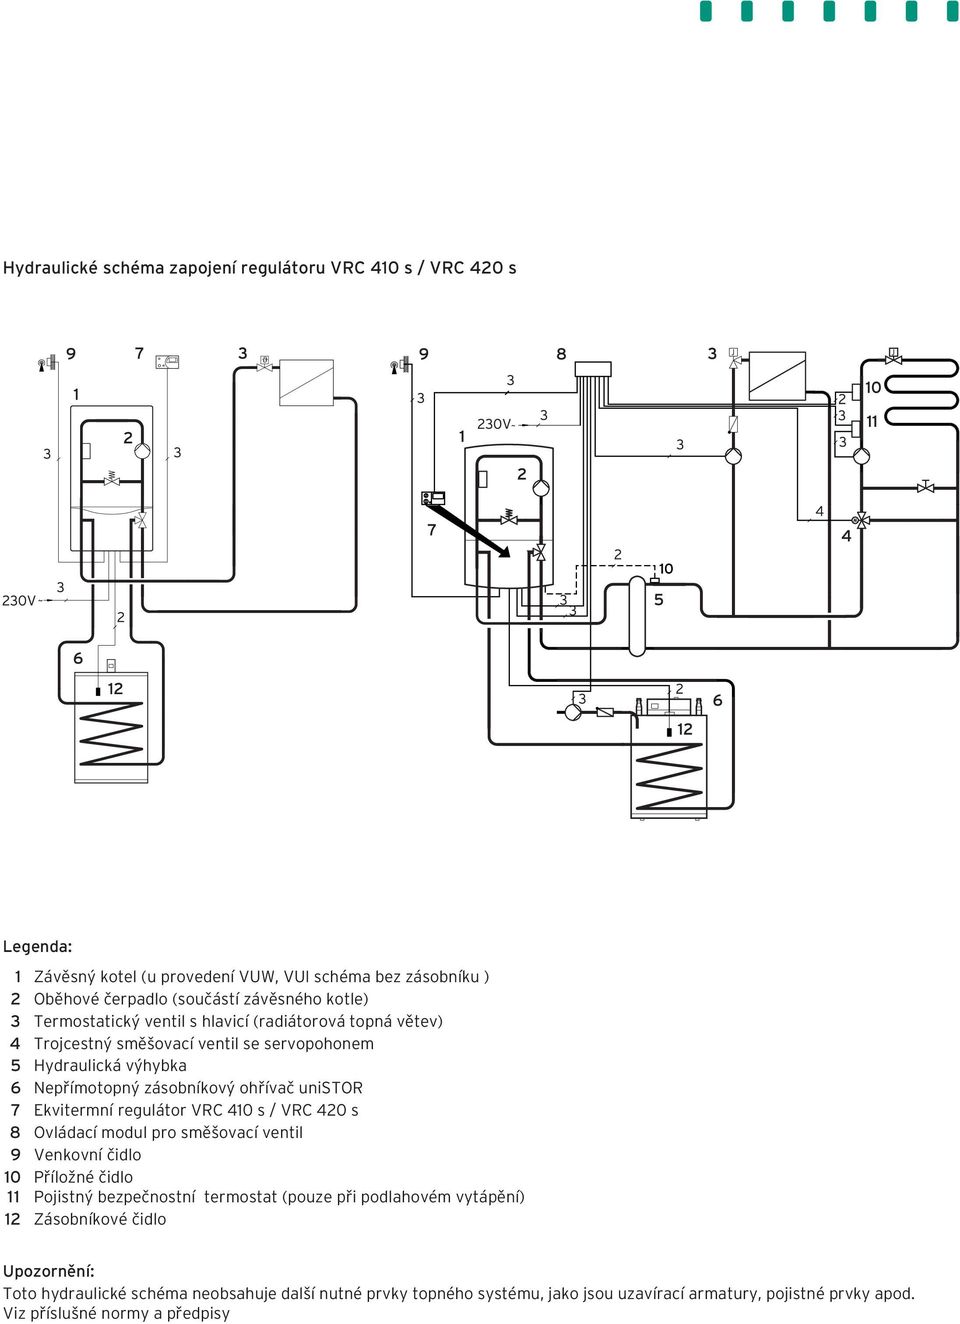 Ekvitermní regulátor VRC 410 s / VRC 420 s 8 Ovládací modul pro směšovací ventil 9 Venkovní čidlo 10 Příložné čidlo 11 Pojistný bezpečnostní termostat (pouze při podlahovém